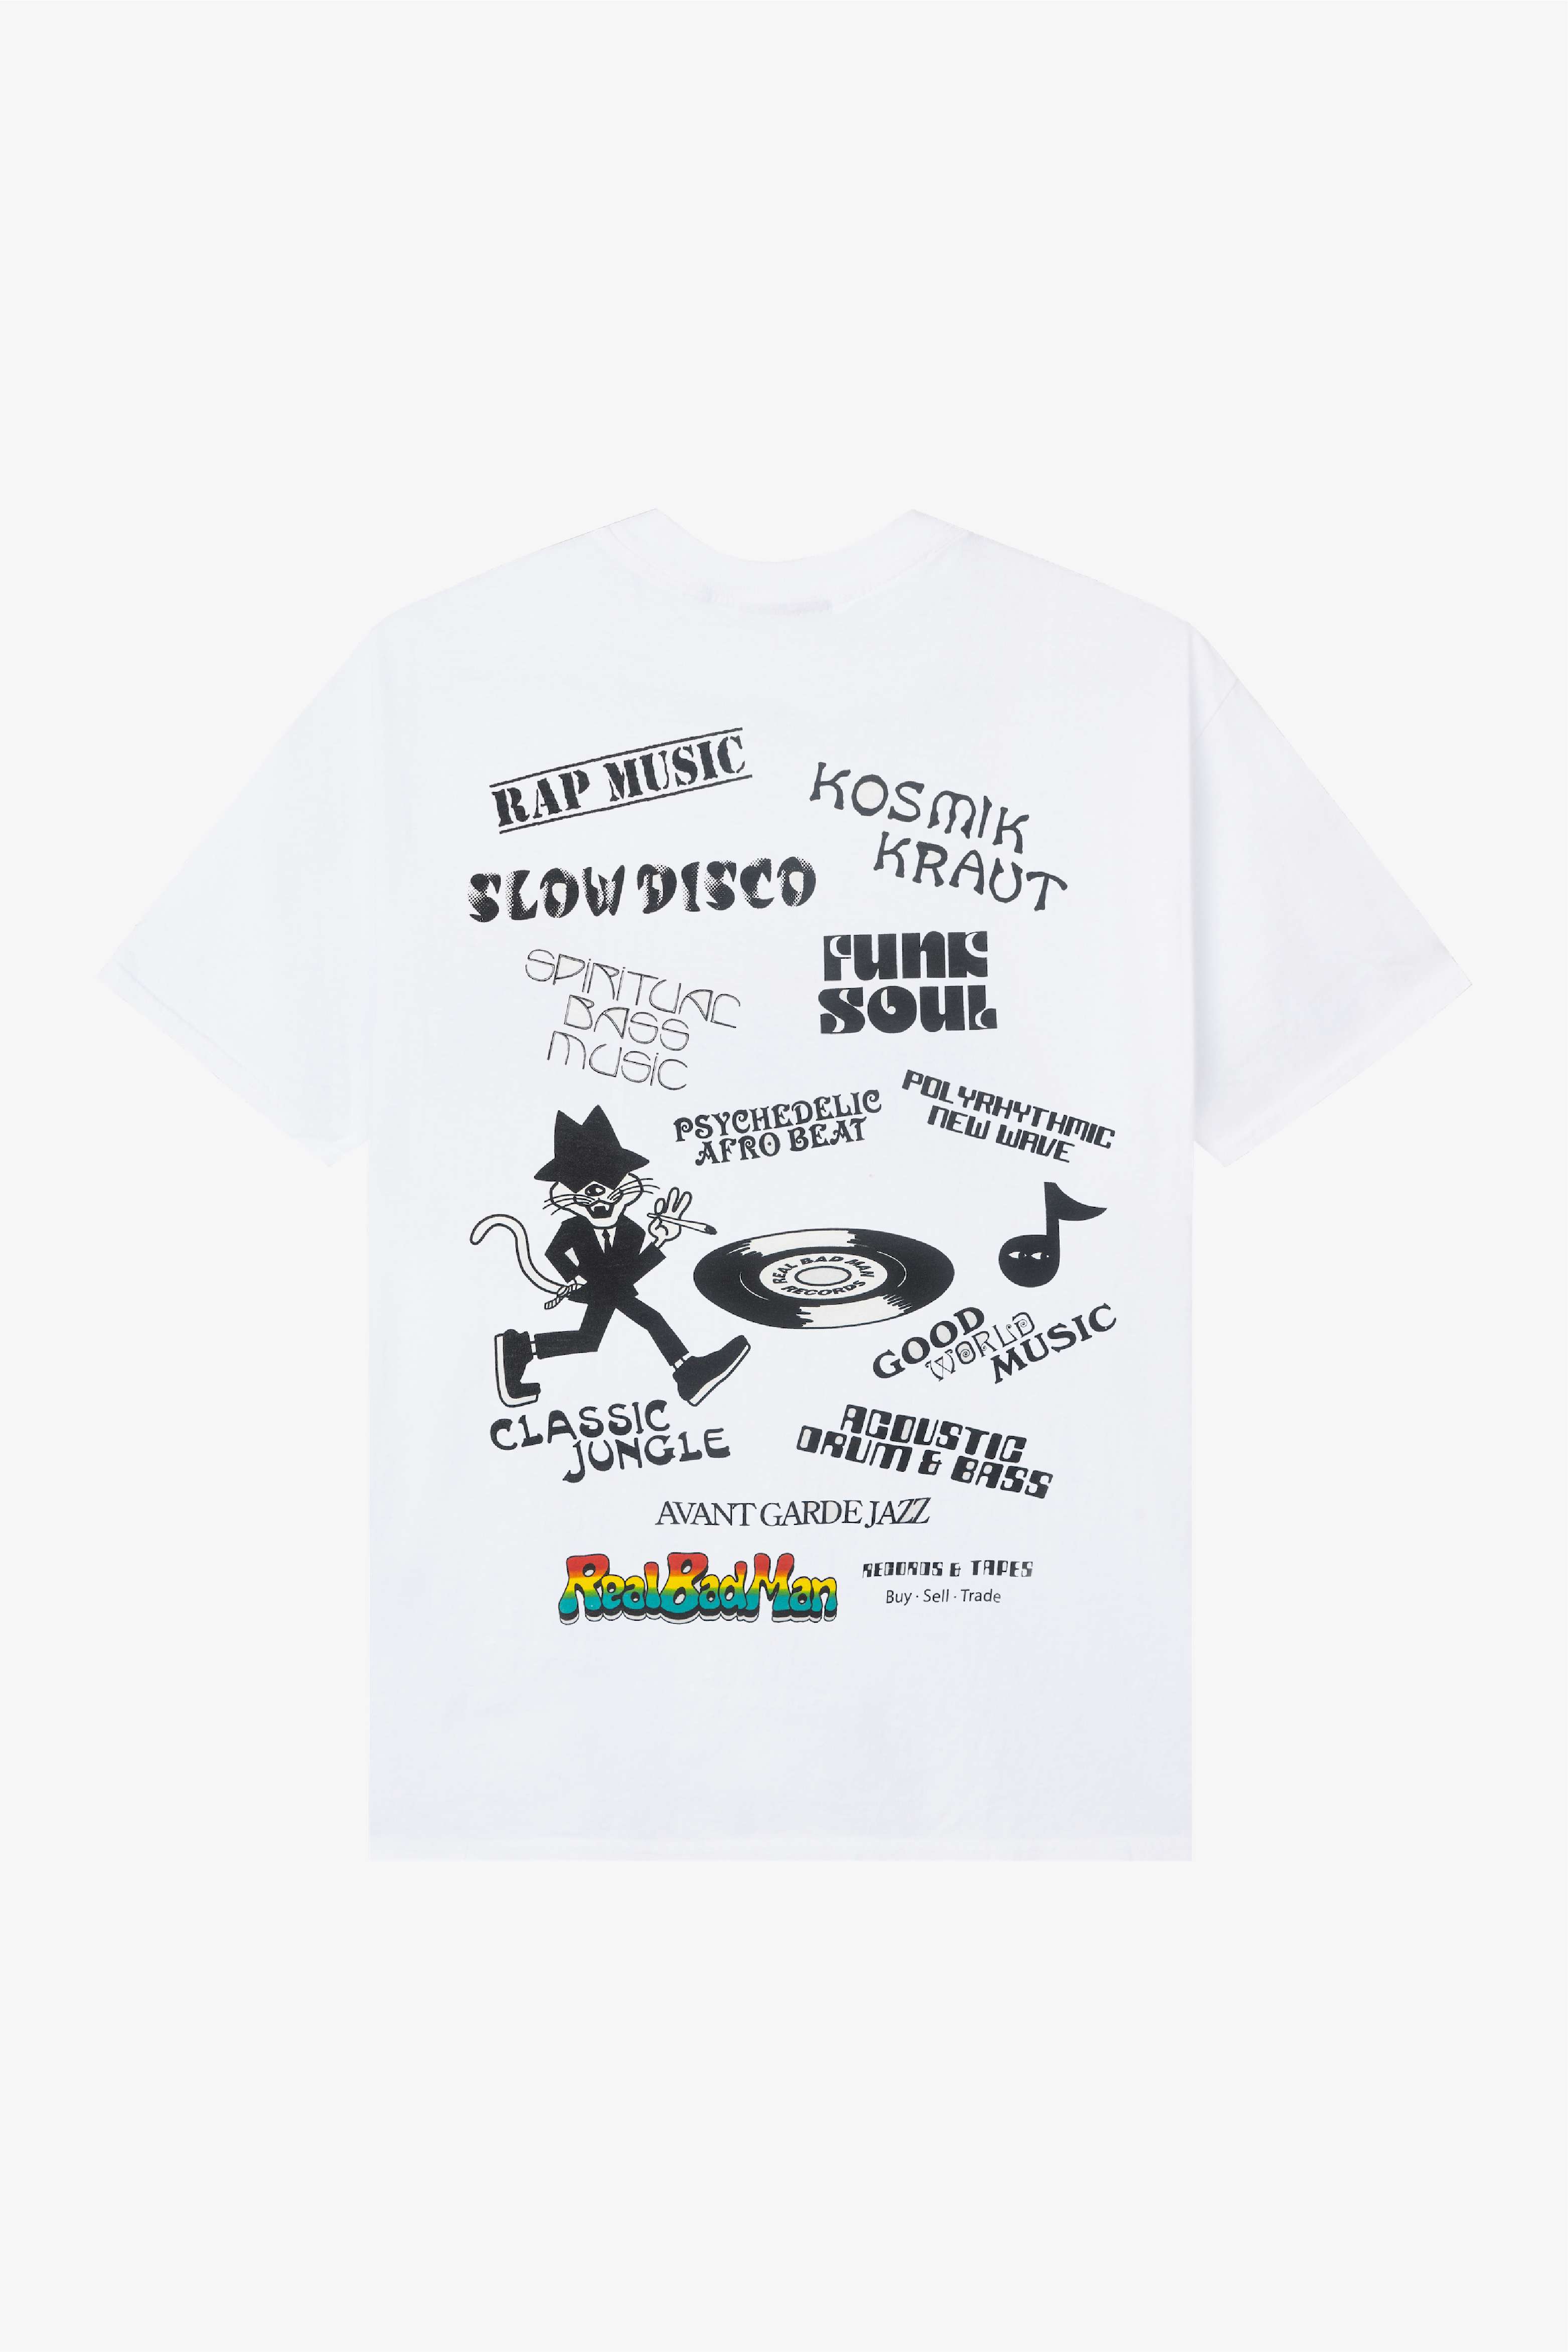 Selectshop FRAME - REAL BAD MAN Records And Tapes Tee T-Shirts Dubai